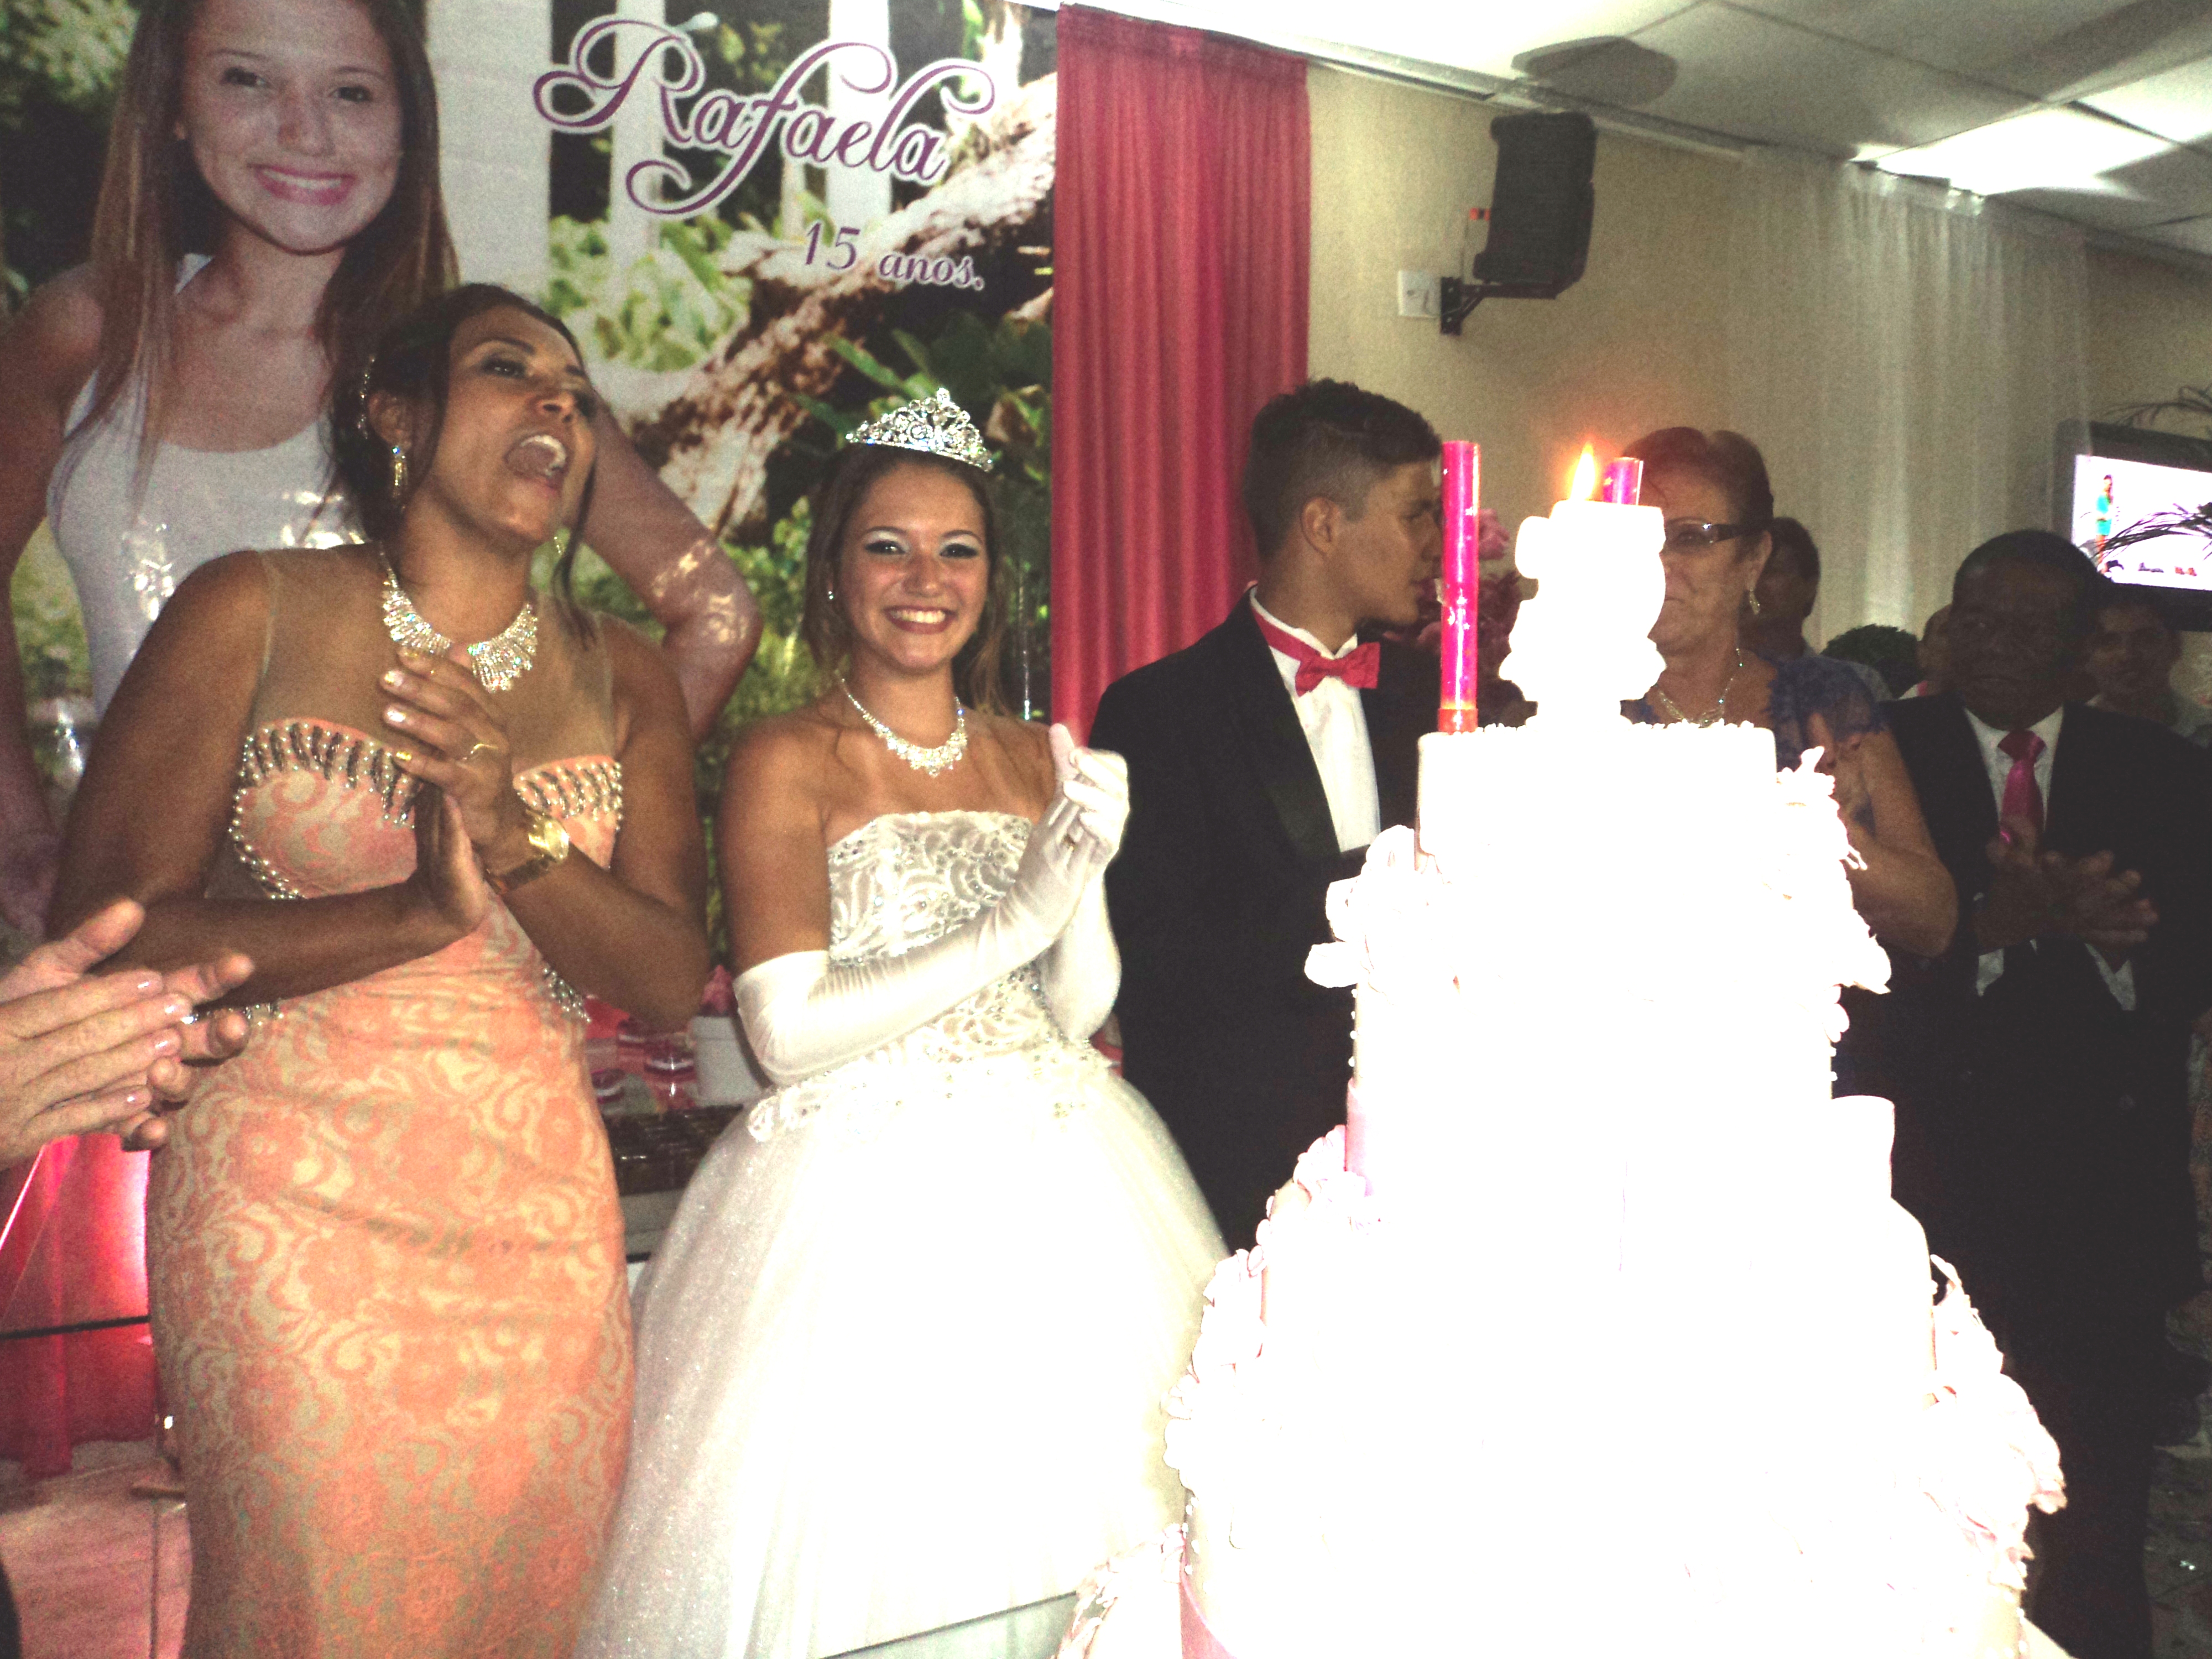 Rafaela, na hora do "parabéns para você" na mesa do bolo entre sua mãe e seu "príncipe".